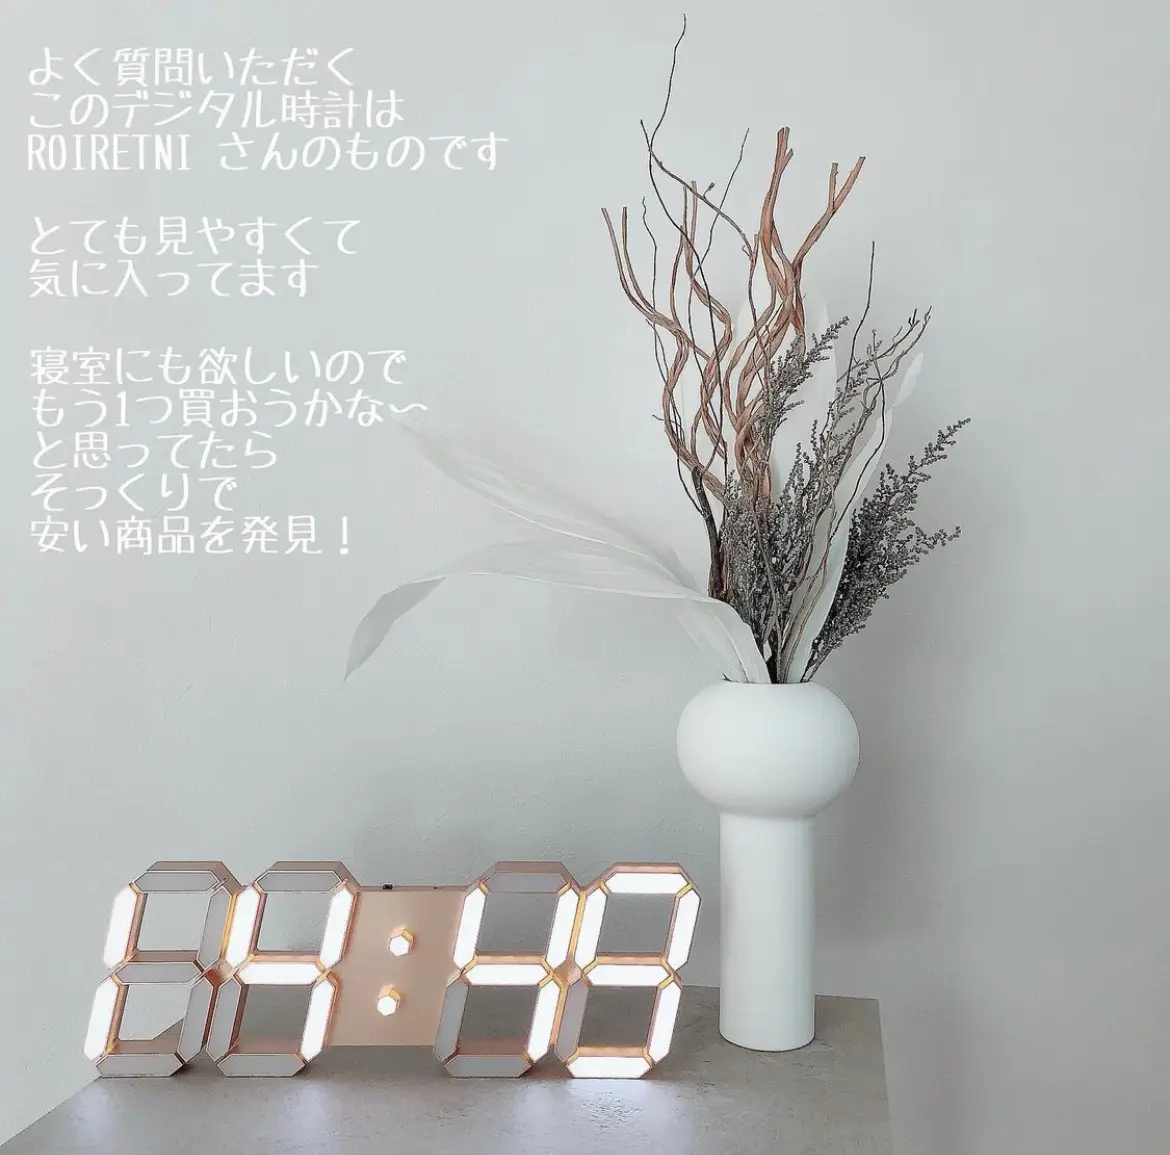 掛け時計 壁掛け時計 デジタル時計 LED 大型 壁掛け 大数字 発光 クロック 静音 スマートおしゃれ レトロ シンプル 北欧風 ホーム装飾 高級感  - 掛け時計、壁掛け時計